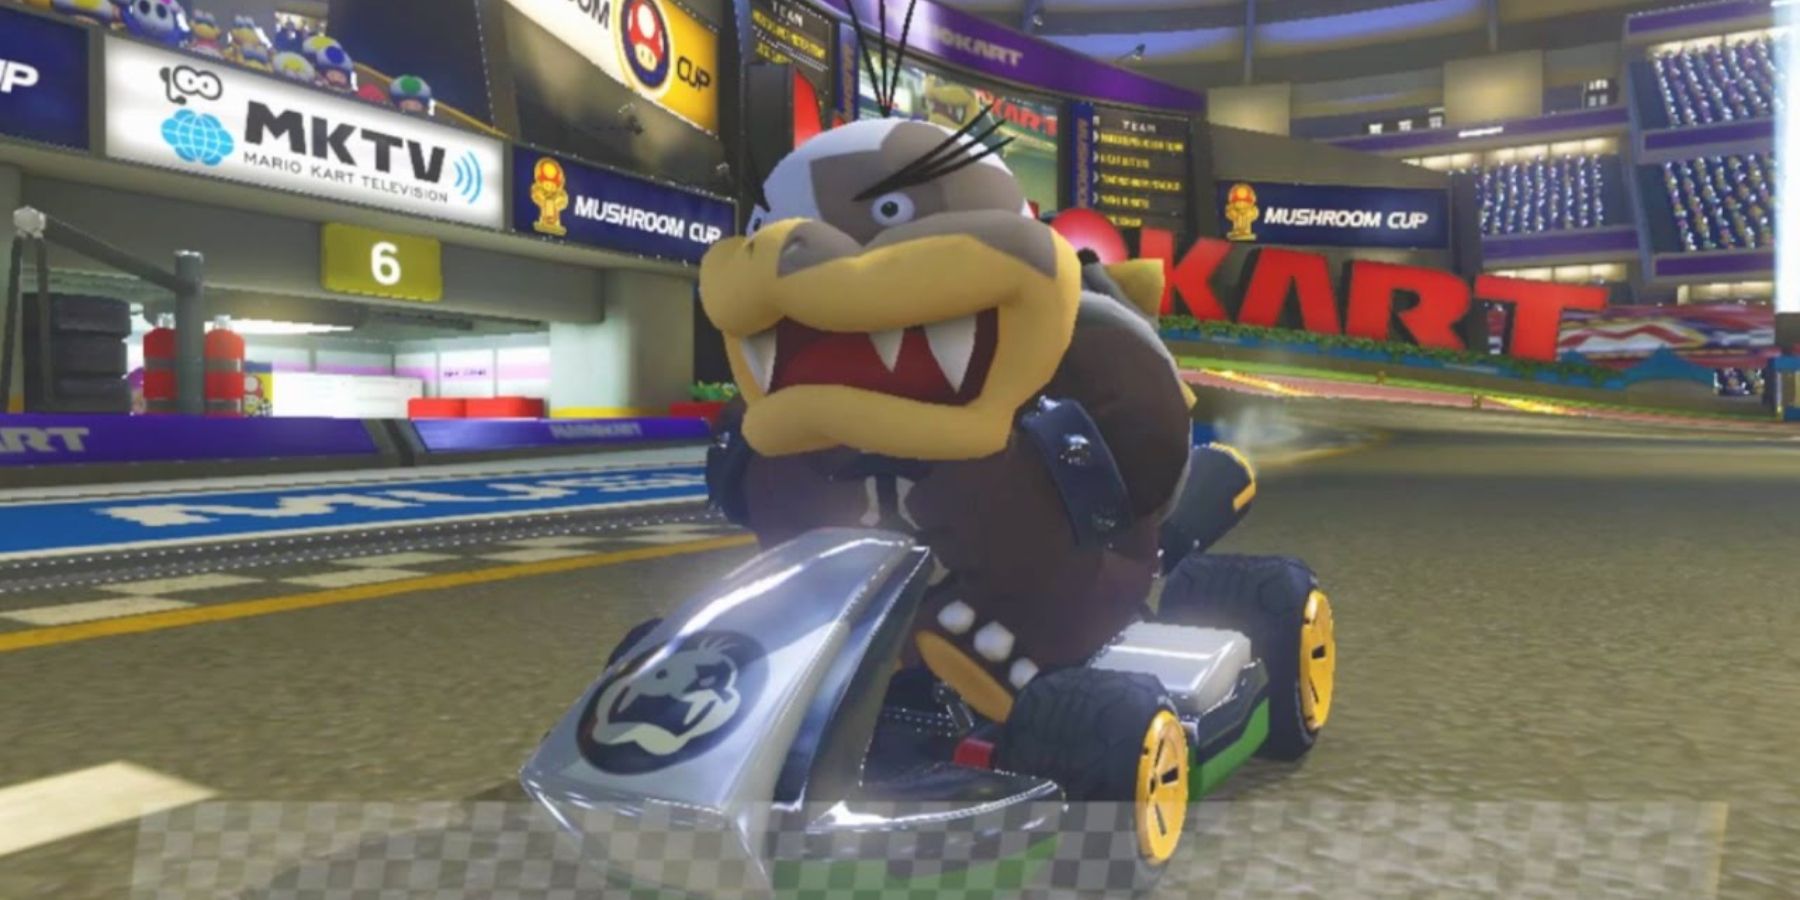 Morton mengemudi dalam balapan Mario Kart